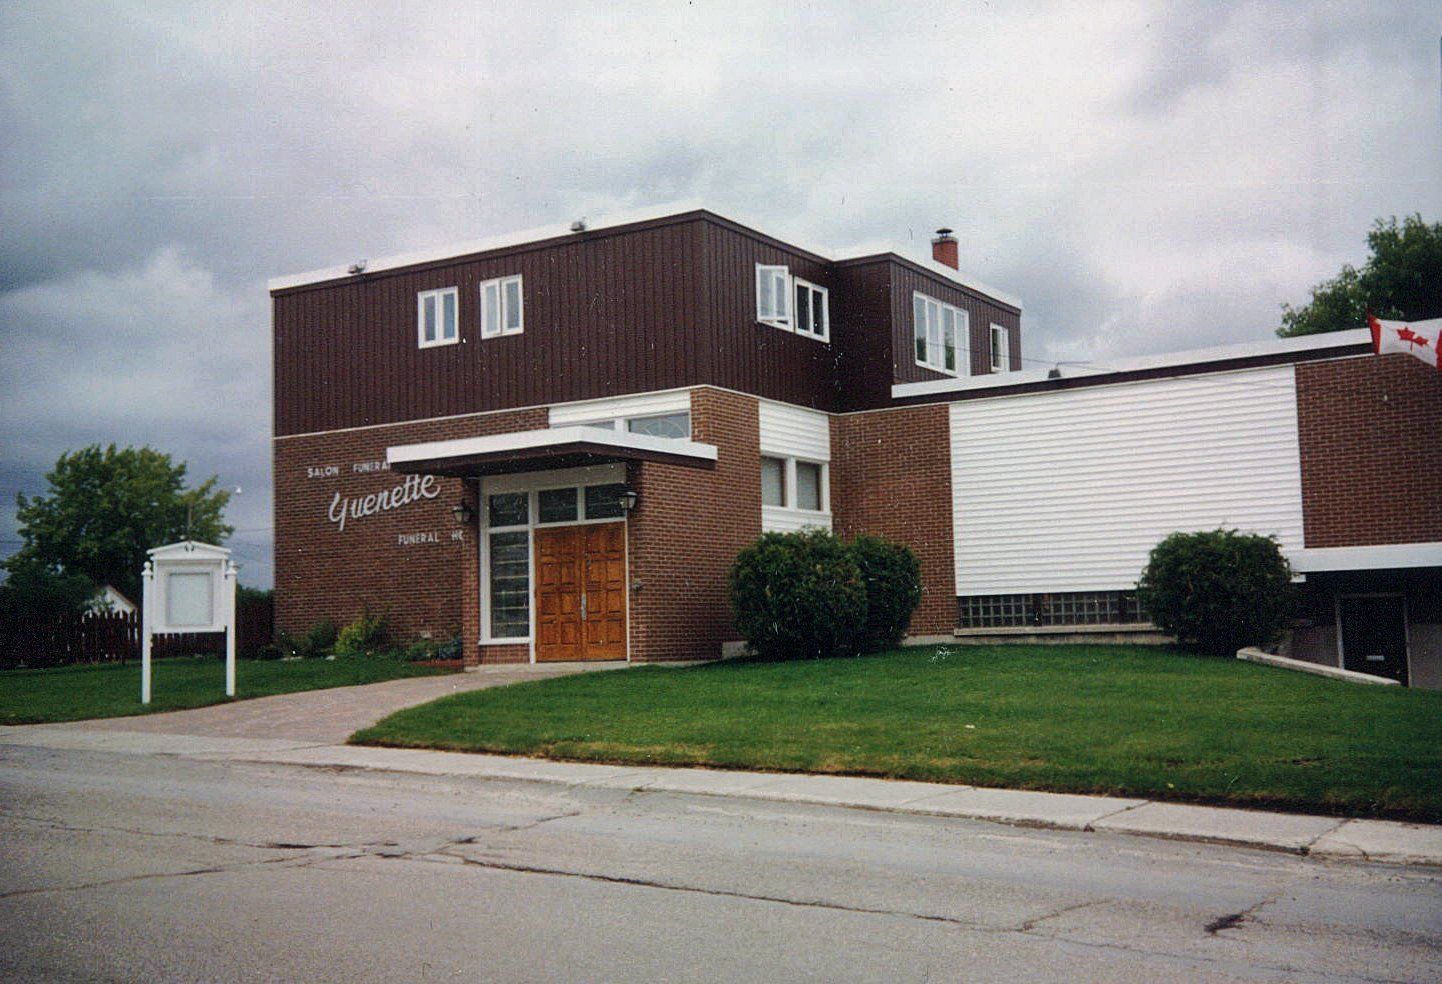 Guenette Funeral Home exterior, circa 1990